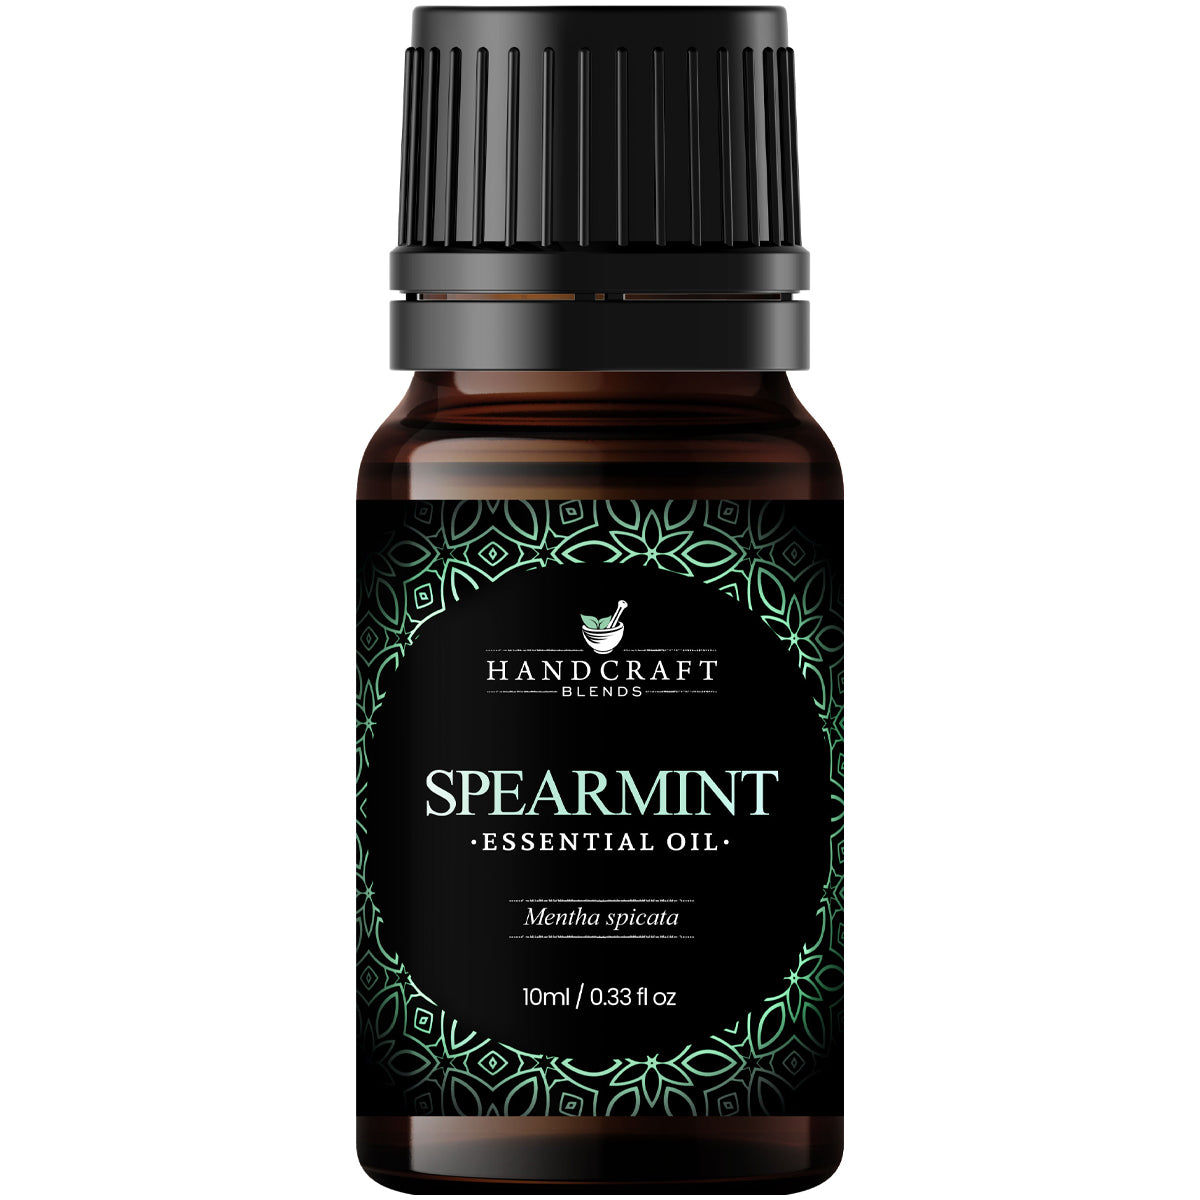 Spearmint - 5ml